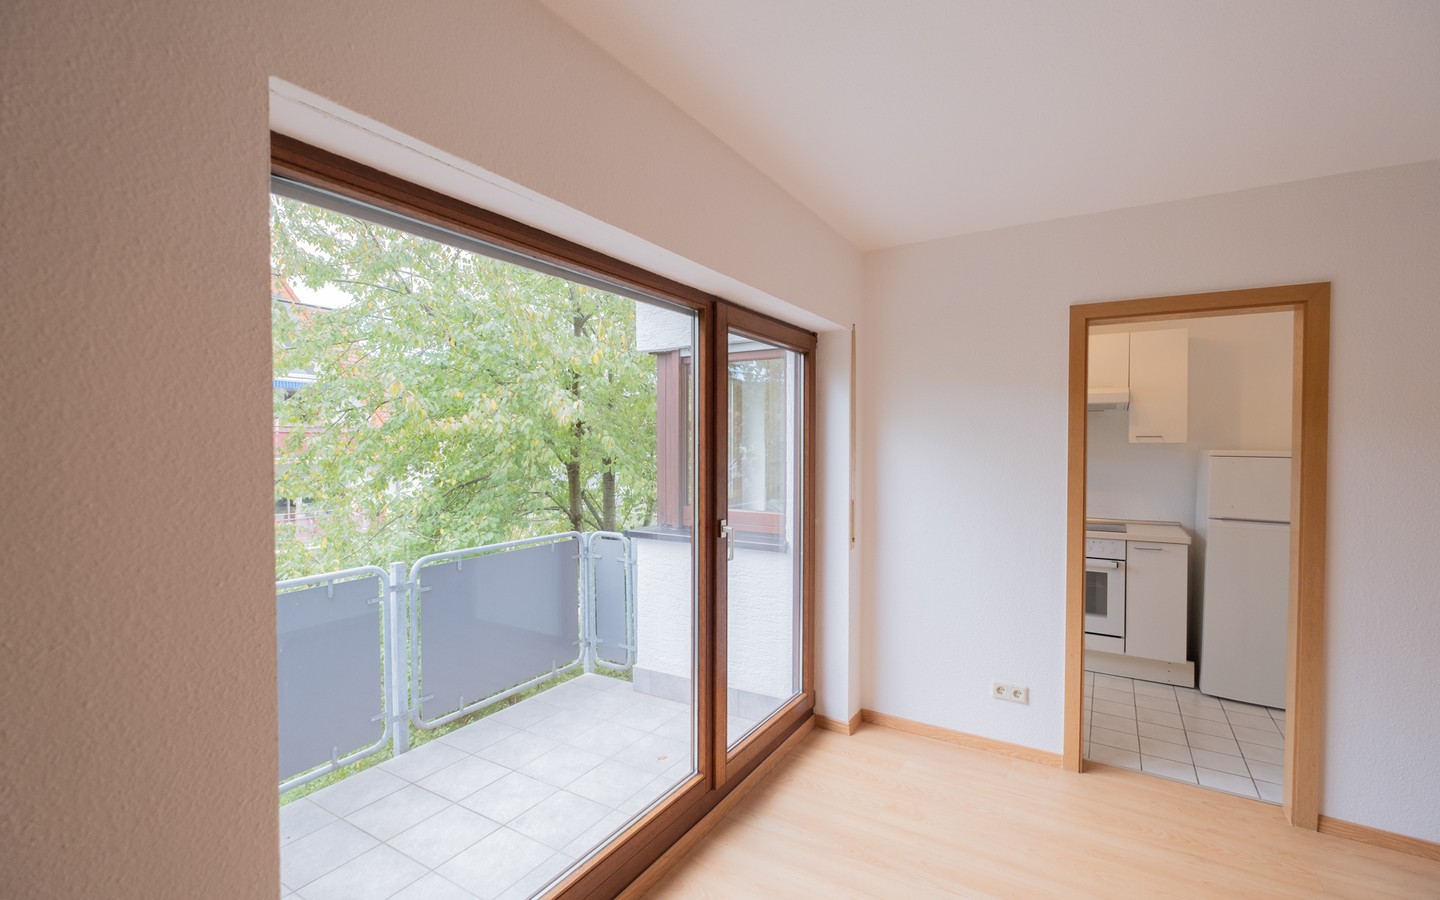 Zimmer 1 - Neues Eigenheim oder neue Kapitalanlage: 2-Zimmer-Dachwohnung in Leimen - sofort bezugsfrei!